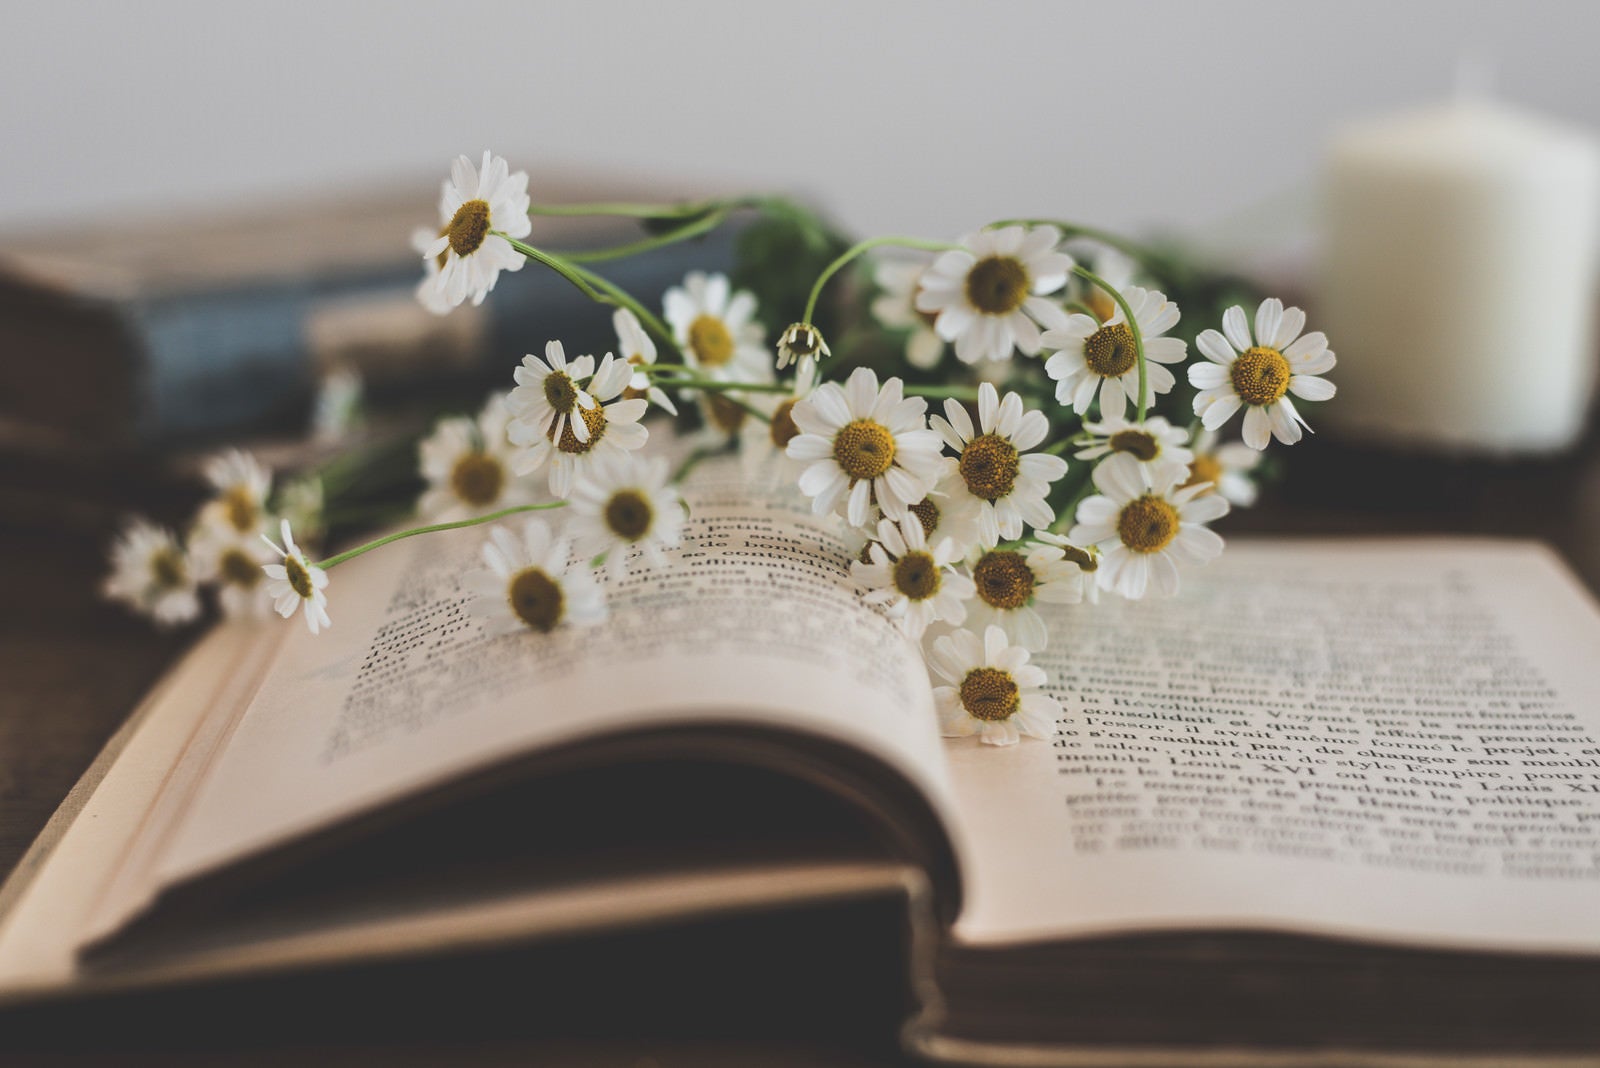 「読みかけの本の上に置かれた花」の写真